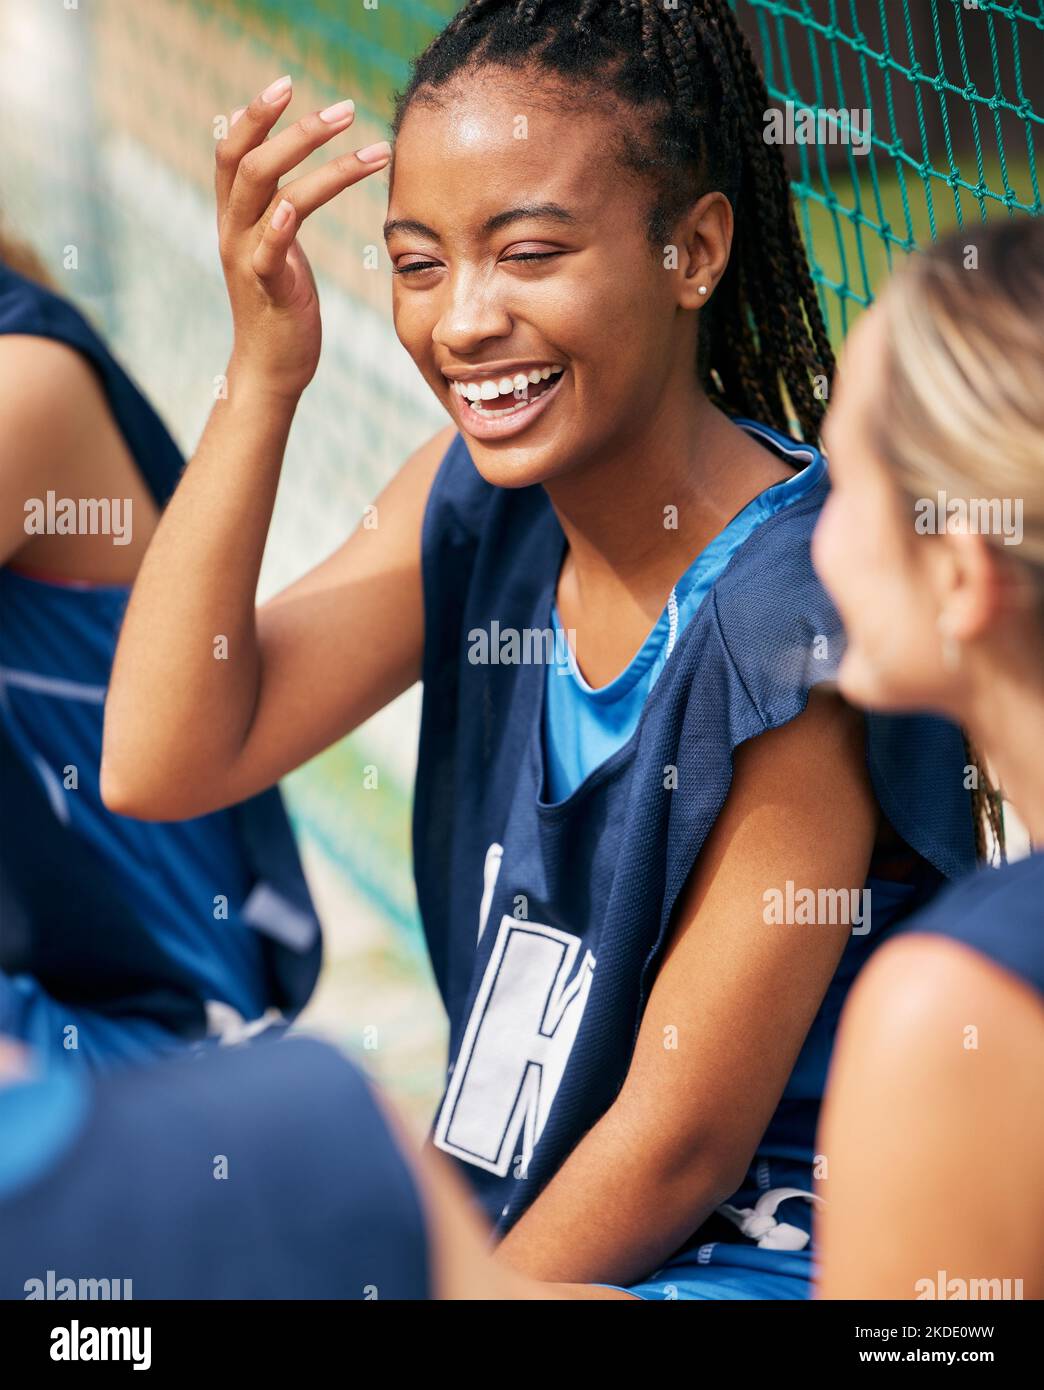 Donna, ridendo o legandosi sul campo sportivo con gli amici della comunità del netball o la gente nell'esercitazione della squadra di sviluppo di diversità. Sorriso felice, persona nera o. Foto Stock